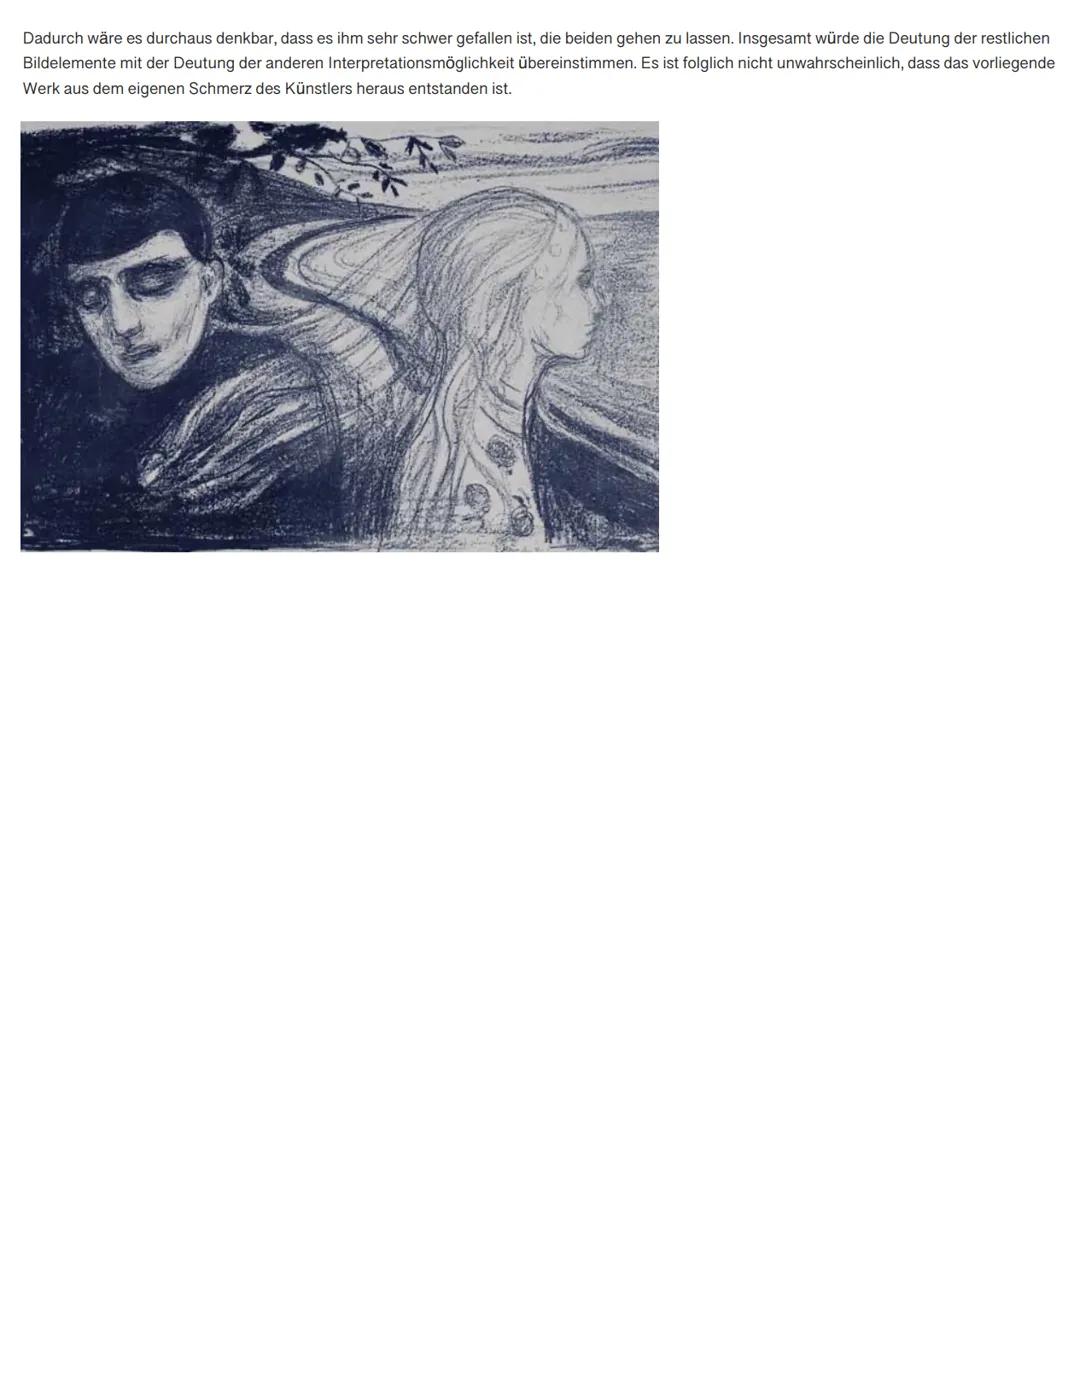 Analyse Edvard Munch: Die Loslösung II (Leoni, 17.01.2020)
Gegeben ist ein Werk von Edvard Munch mit dem Titel ,,Die Loslösung II" aus dem J